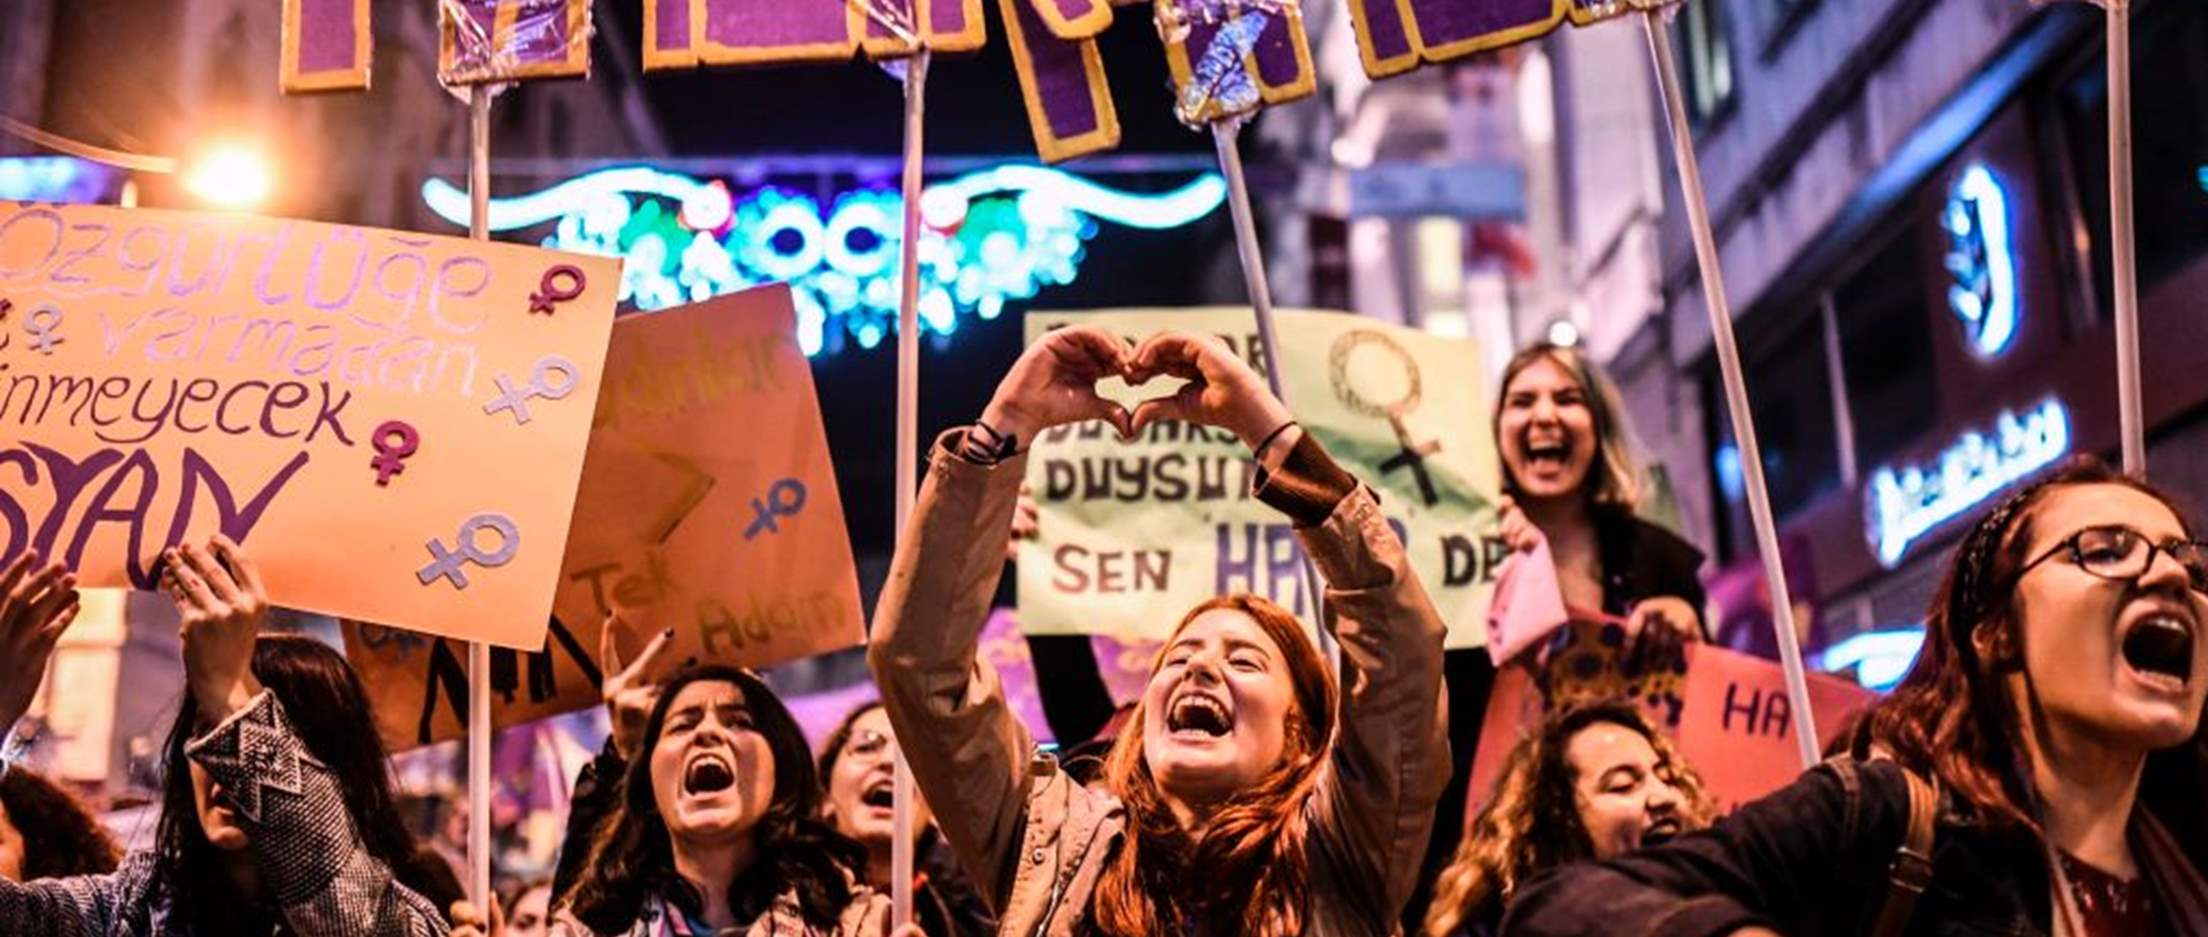 Repressão do Governo na Turquia está a sufocar a sociedade civil com um deliberado clima de medo